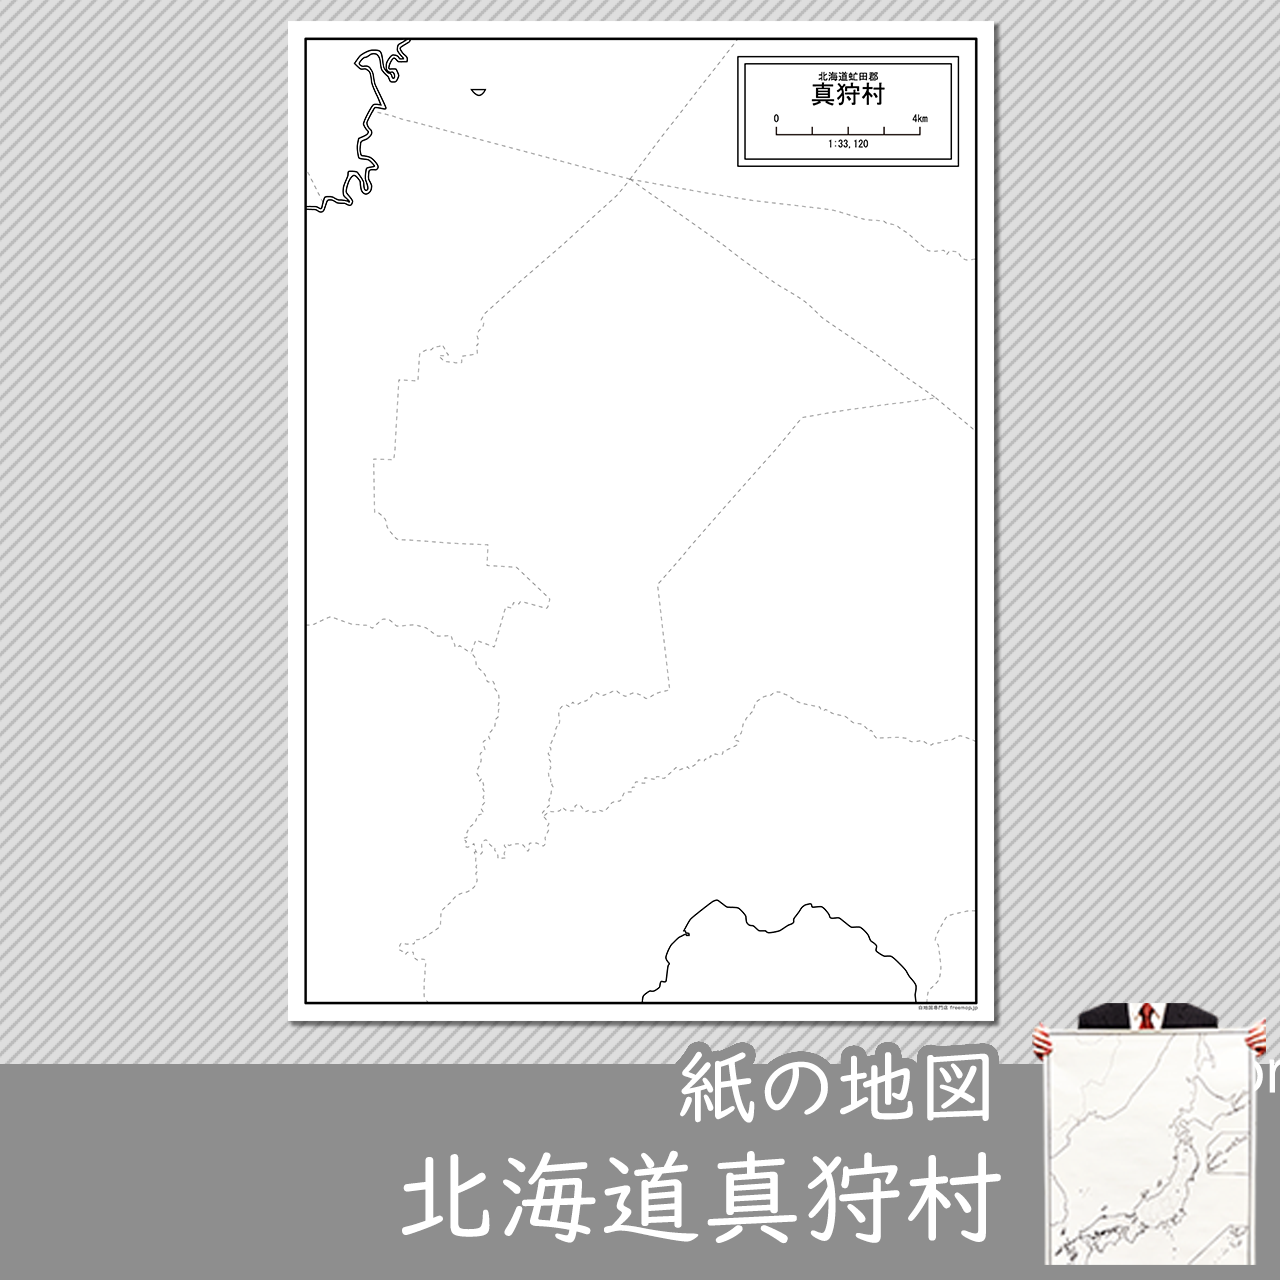 真狩村の紙の白地図